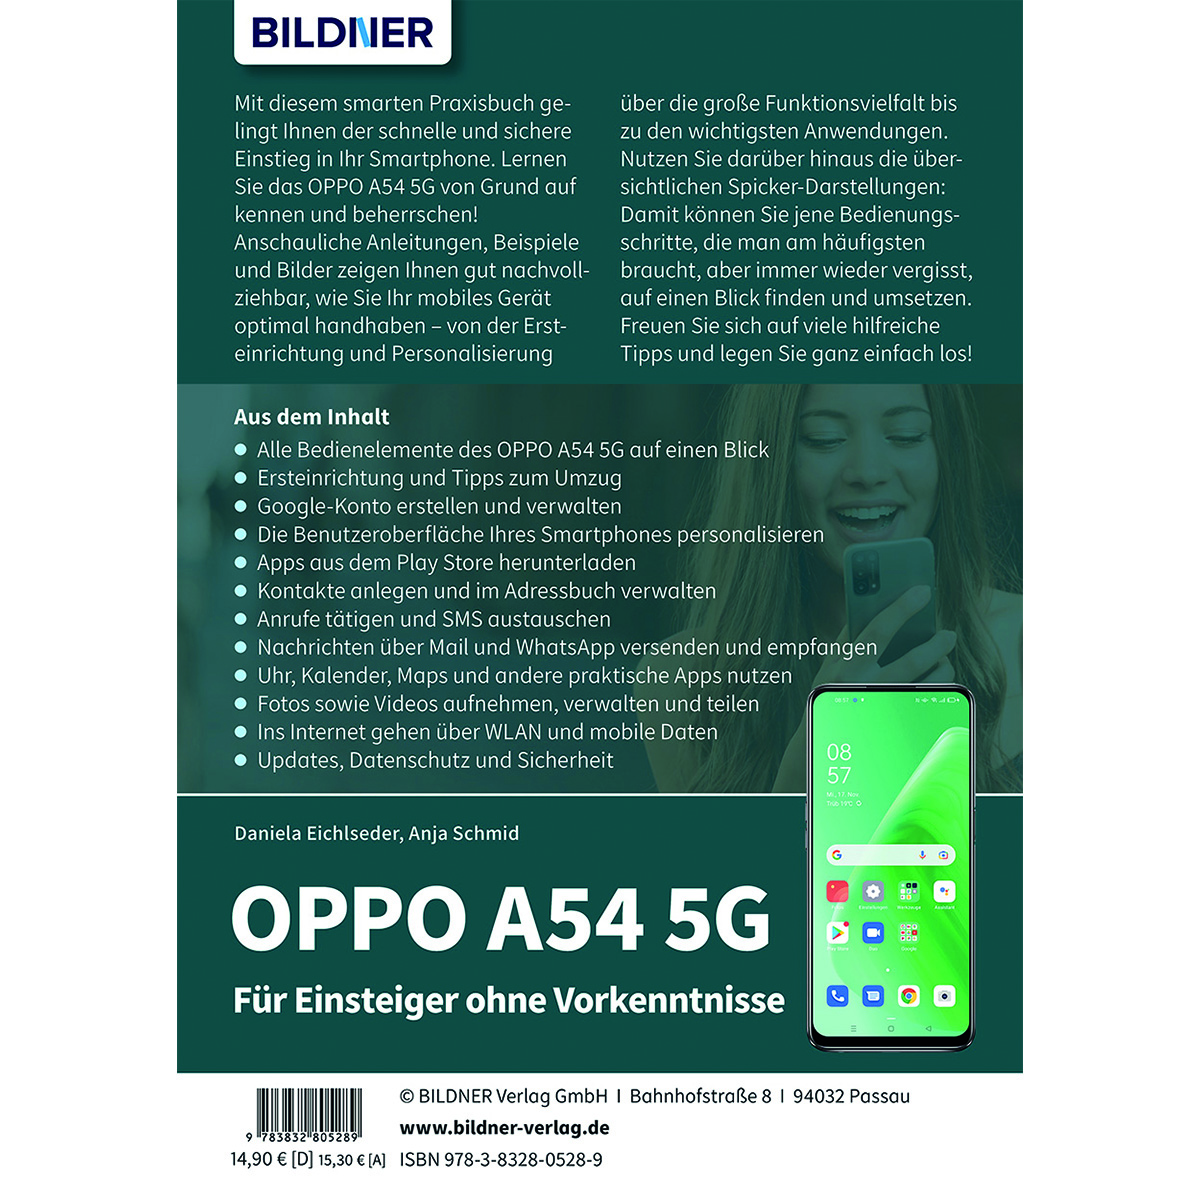 OPPO A54 5G - Vorkenntnisse ohne Einsteiger Für